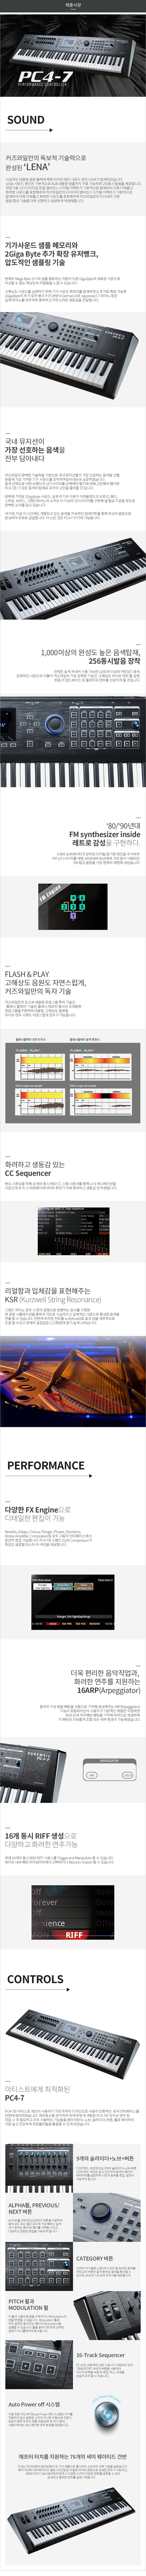 KURZWEIL PC4-7  제품사양